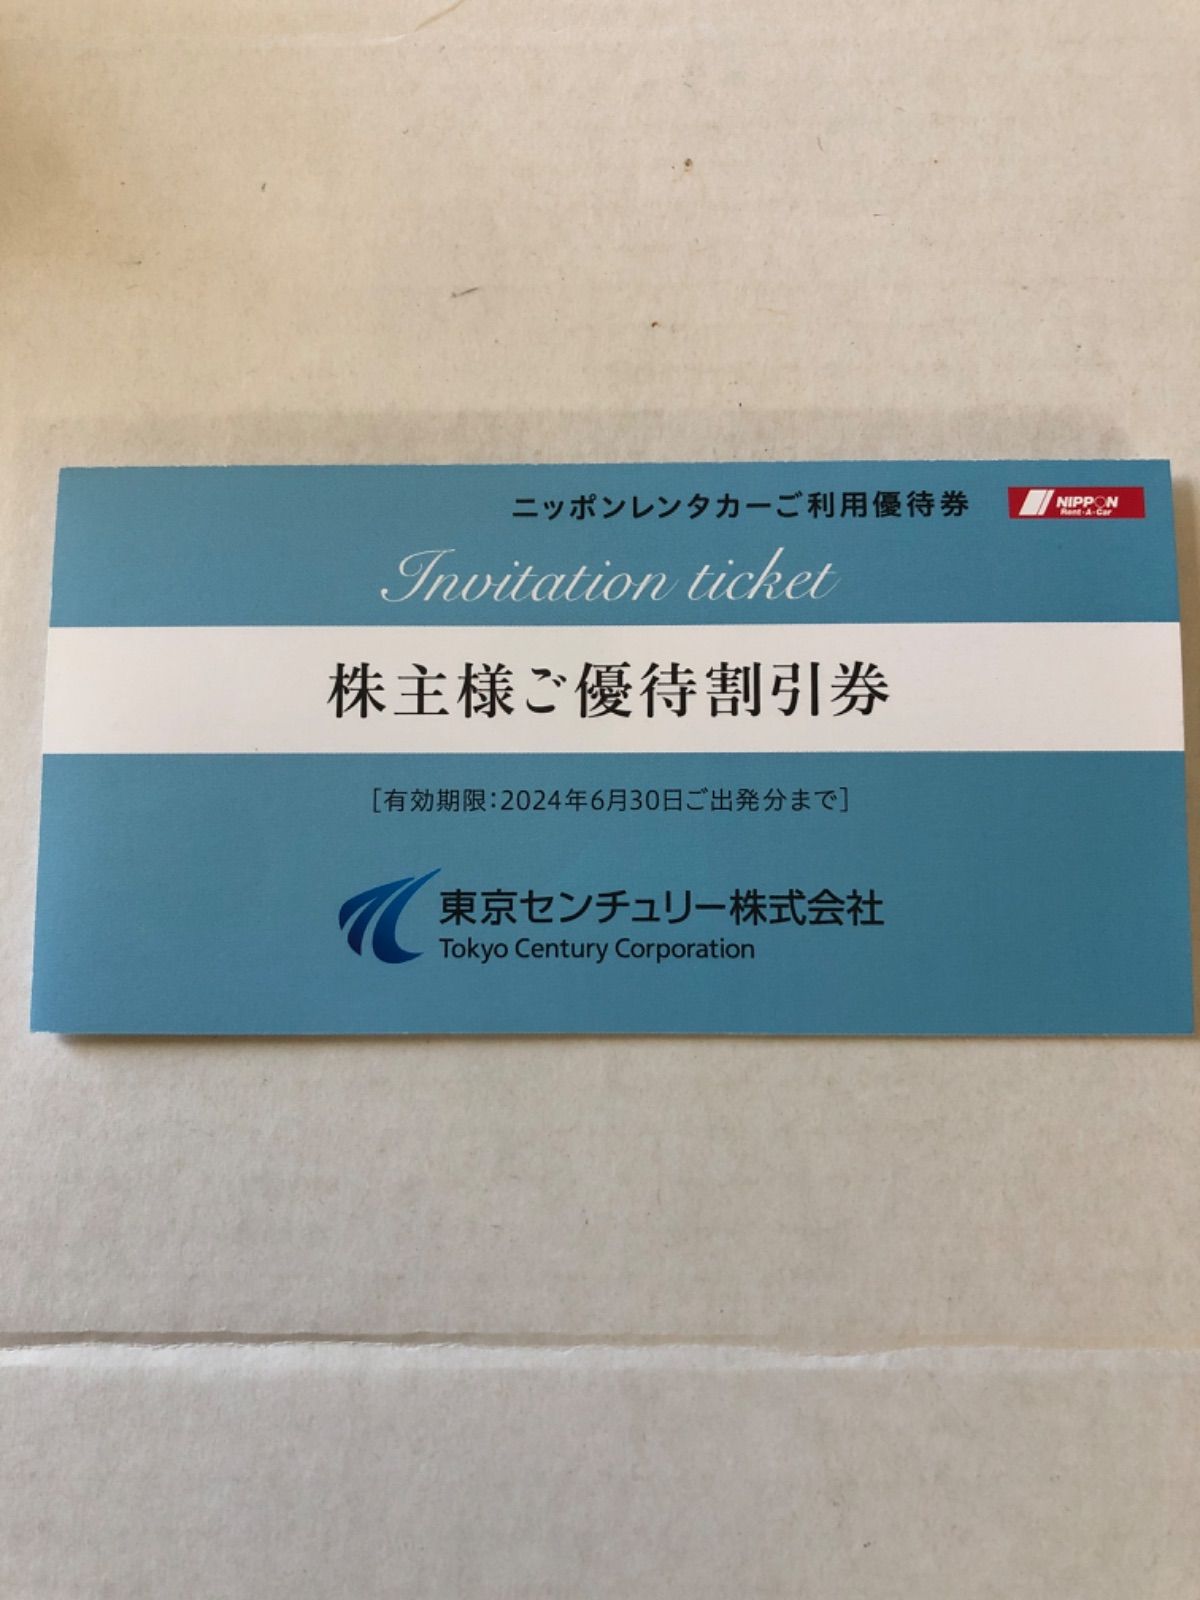 最新★3枚・ニッポンレンタカー優待3,000円割引券・東京センチュリー株主